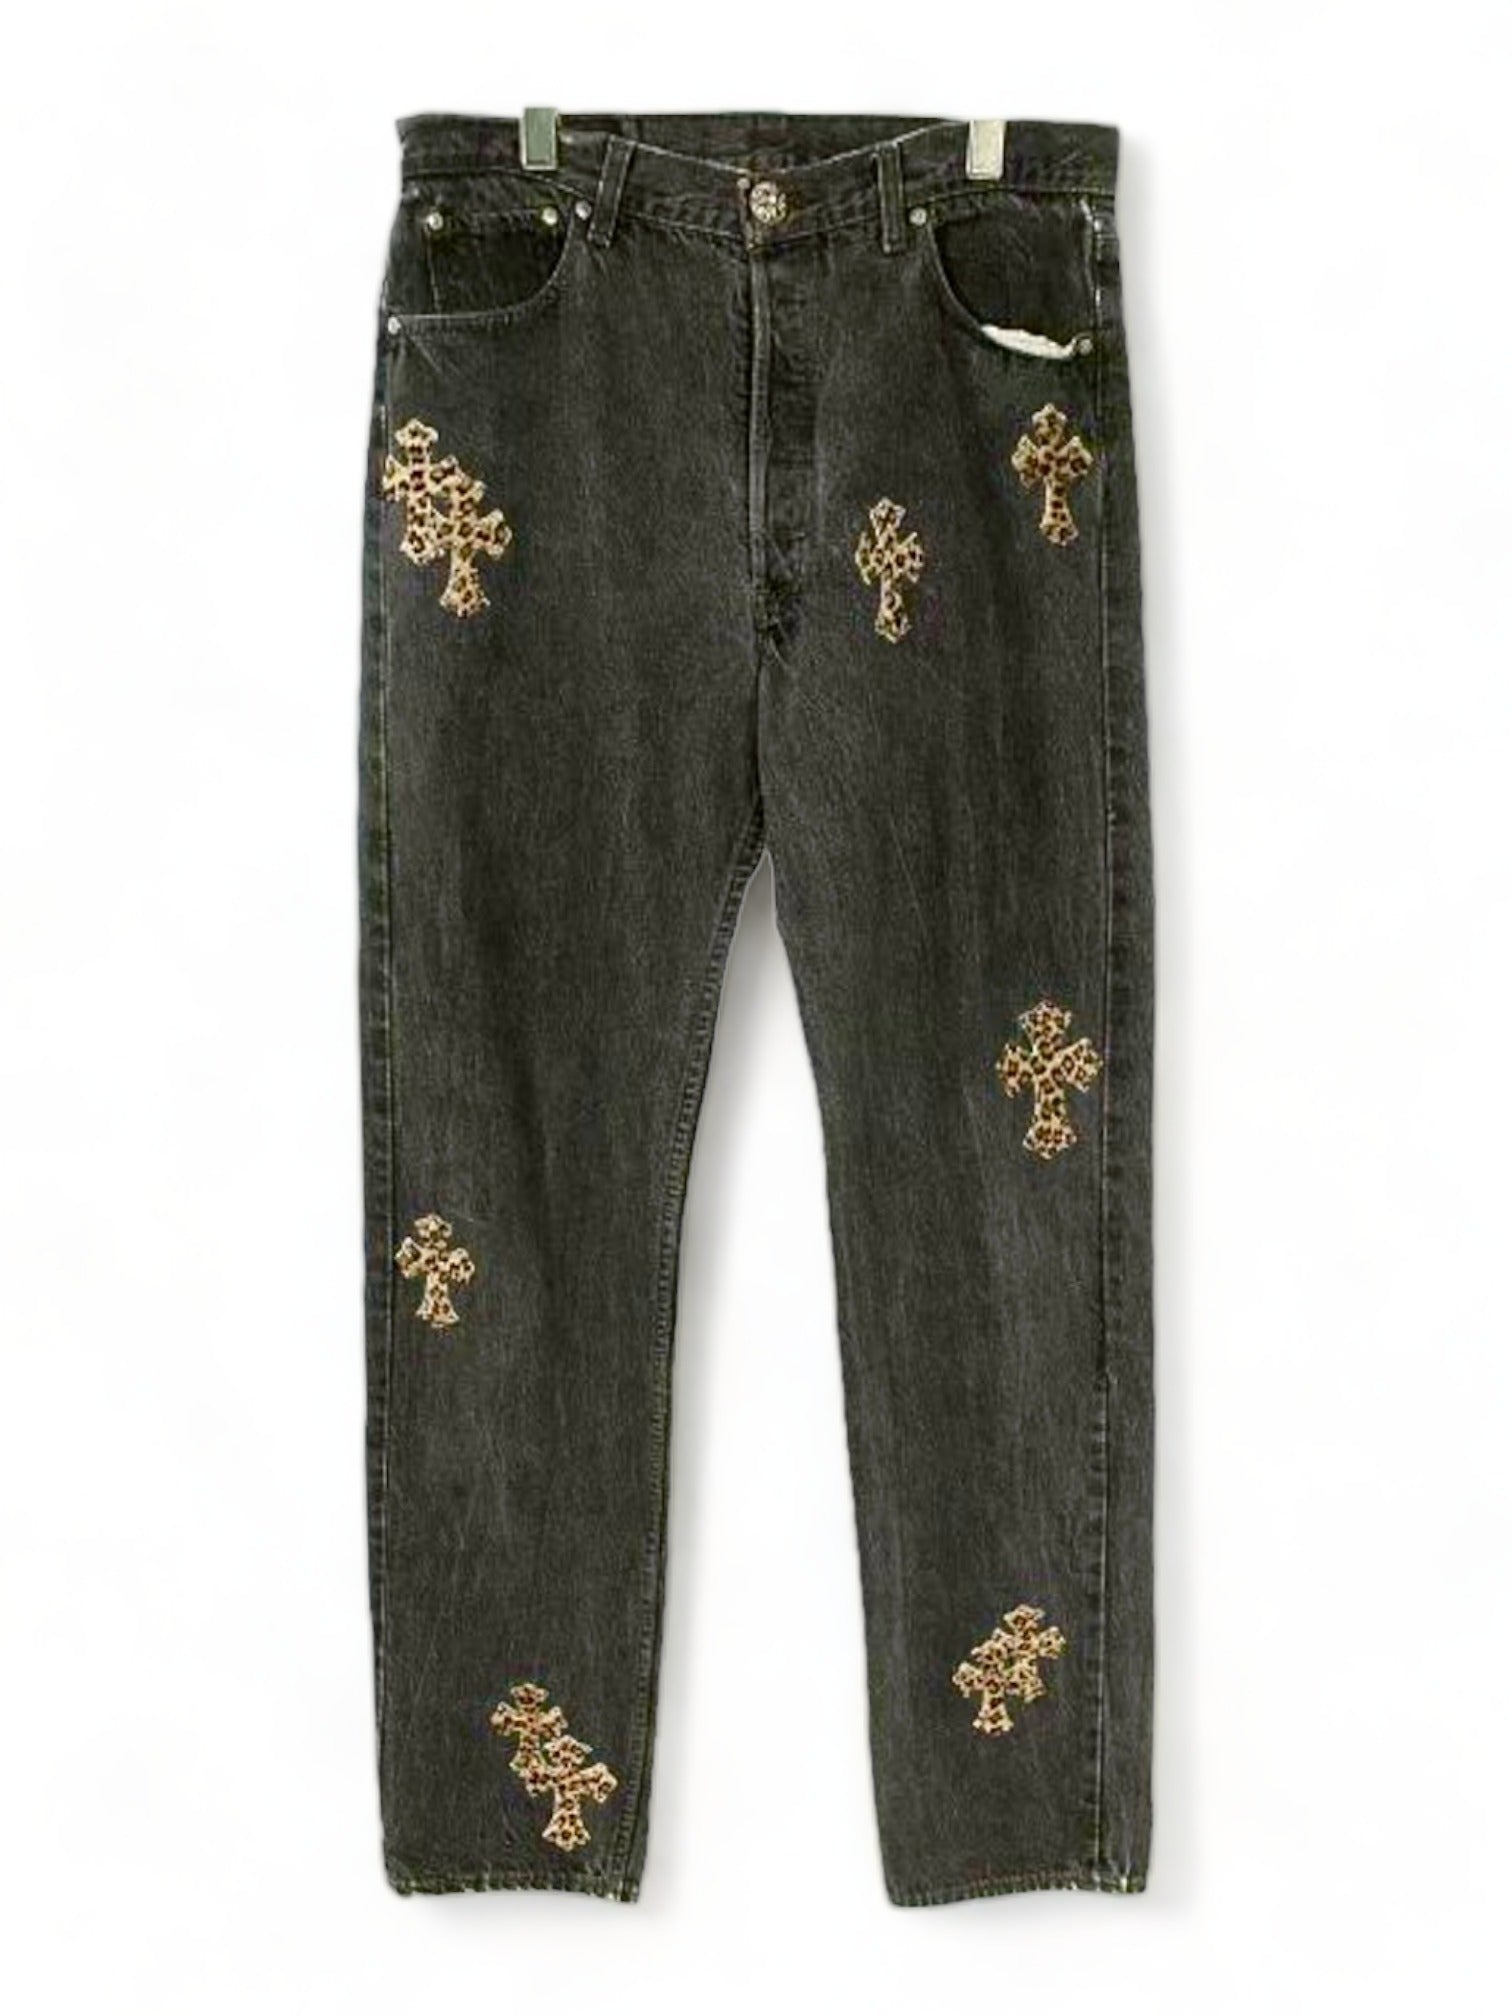 Chrome Hearts Leopard Cross Patch Black Denim Jeans